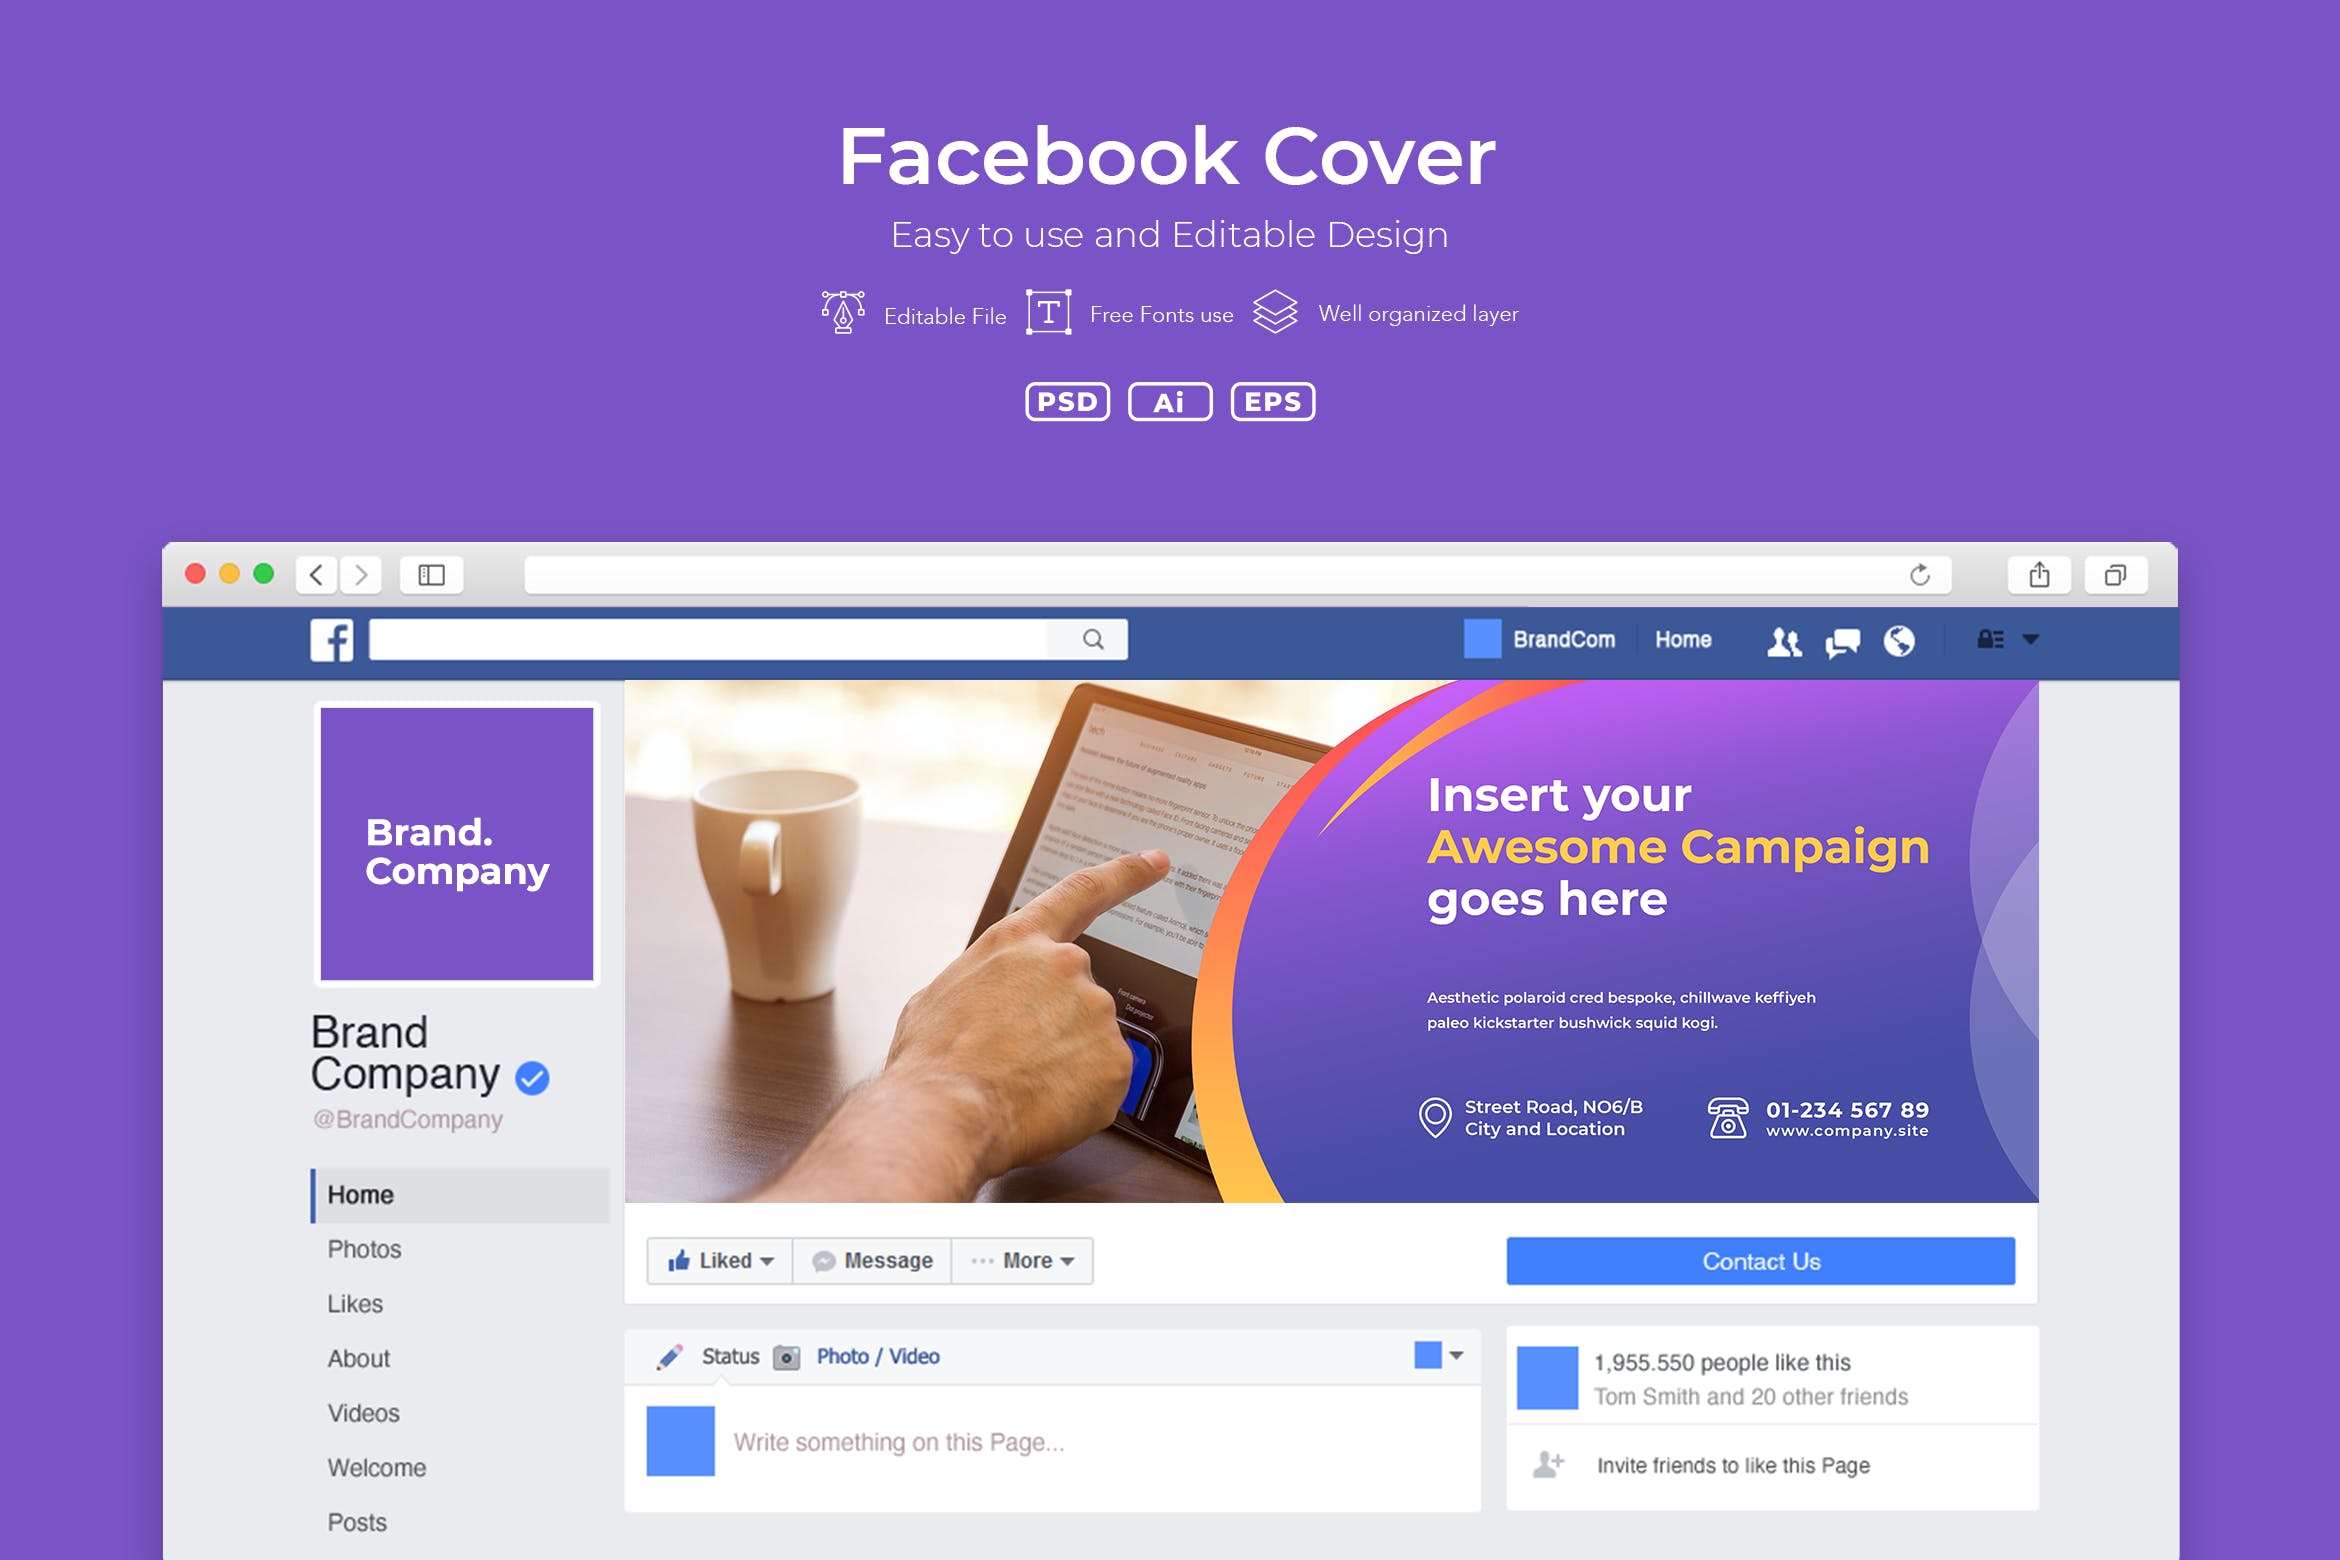 企业商务主题Facebook主页封面设计模板第一素材精选v2.6 ADL Facebook Cover.v2.6插图